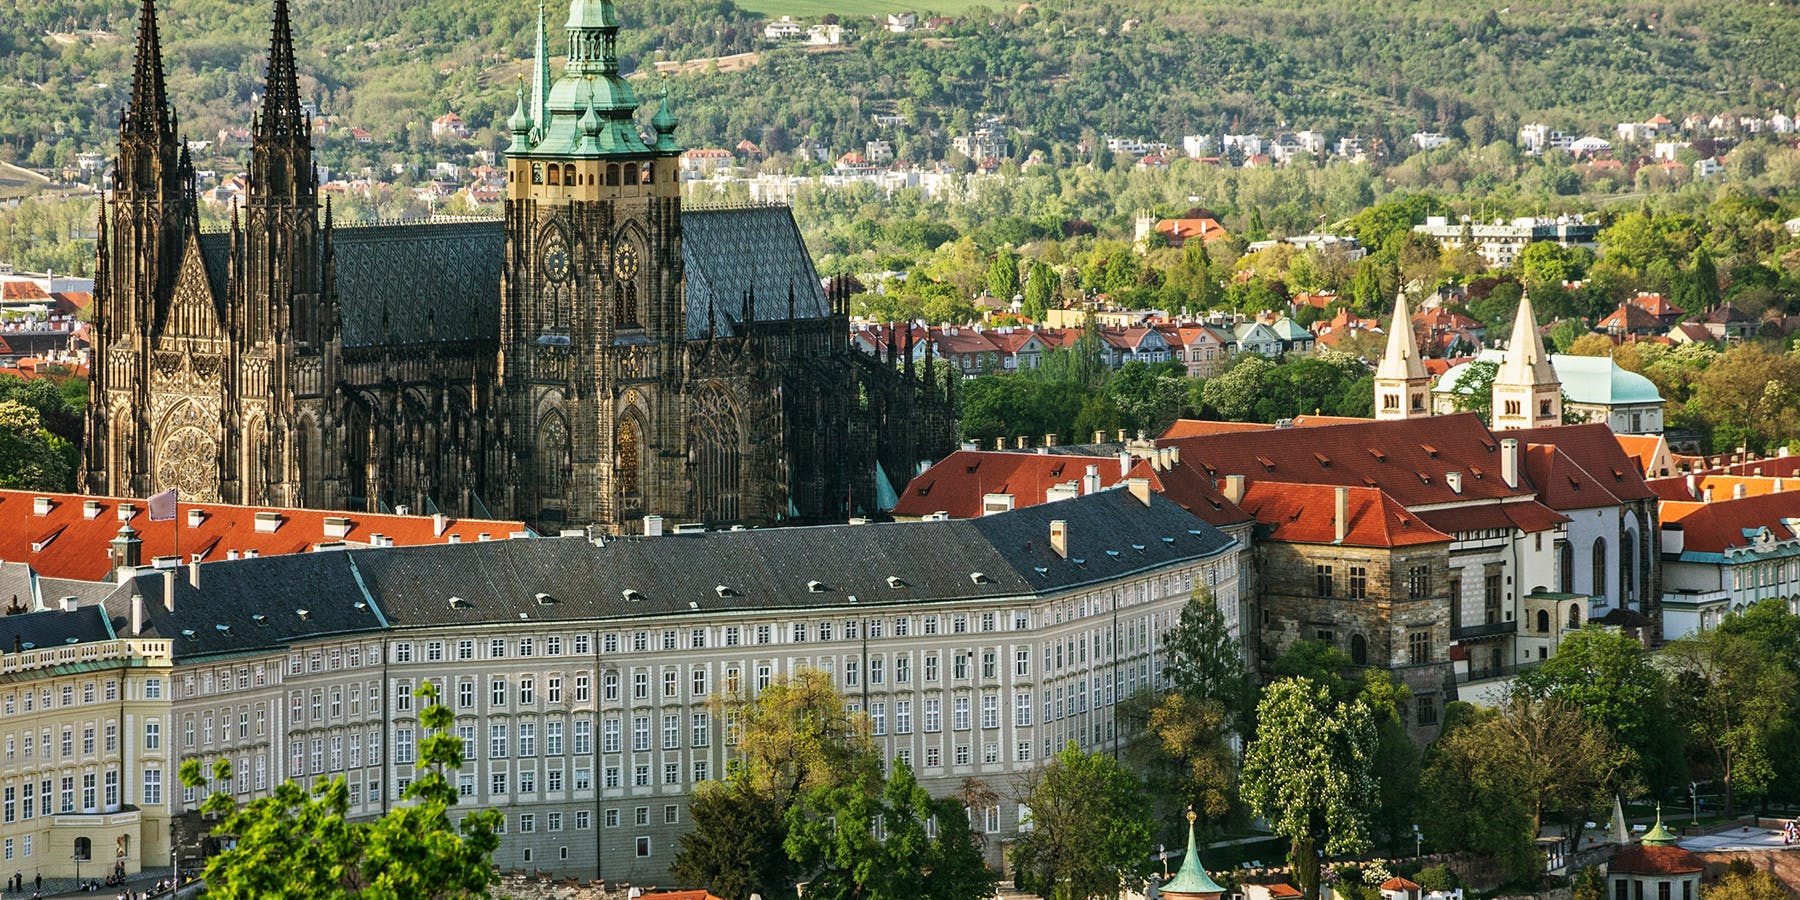 Visit Czech Republic's castle